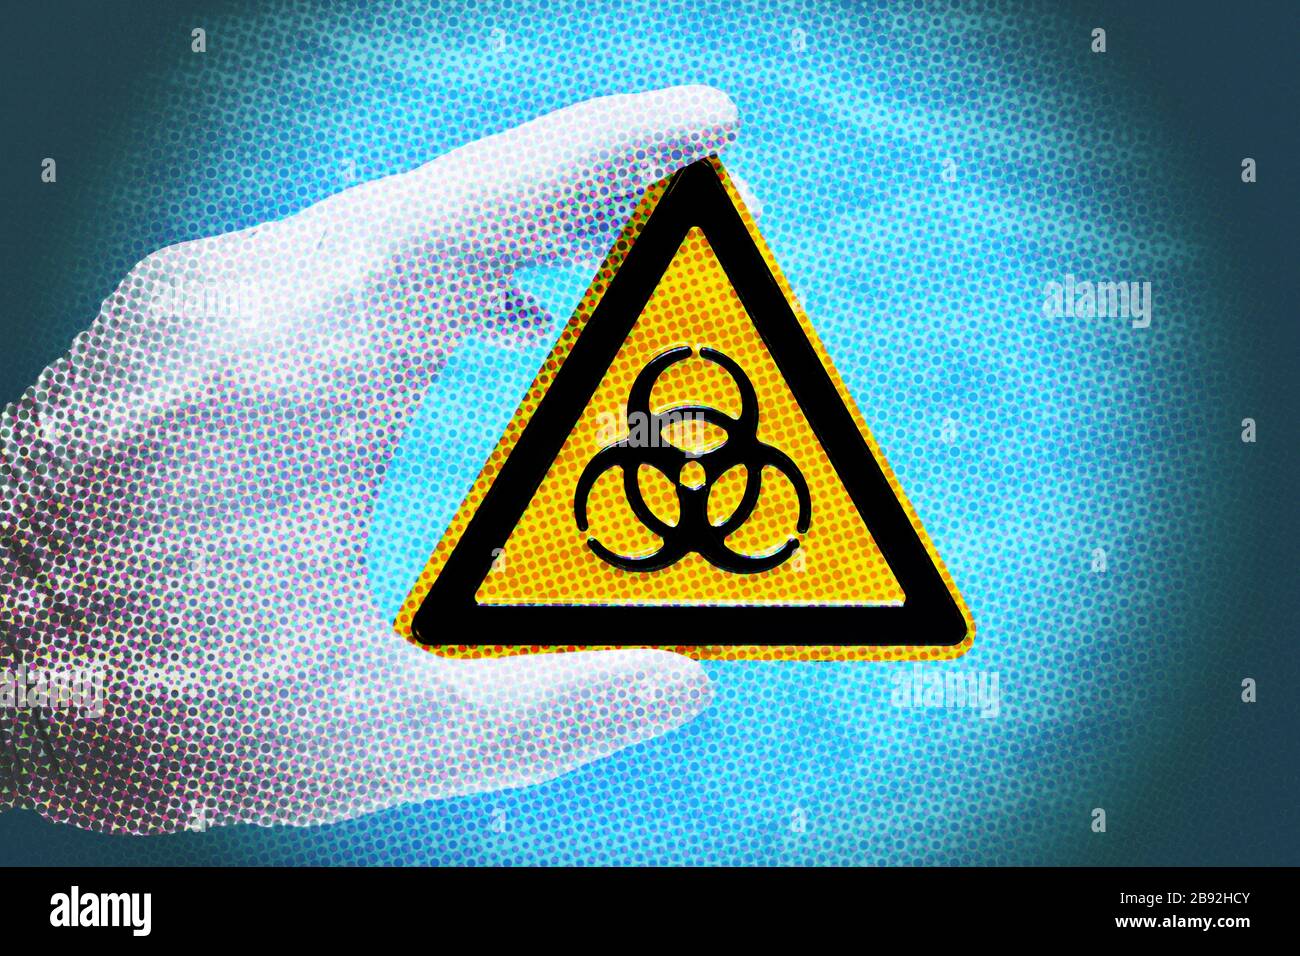 Biologie signe de danger est tenu par une main dans le gant de latex, la photo symbolique Coronavirus, Biogefährdungsschild wid von einer main im Latexhandschuh gehal Banque D'Images